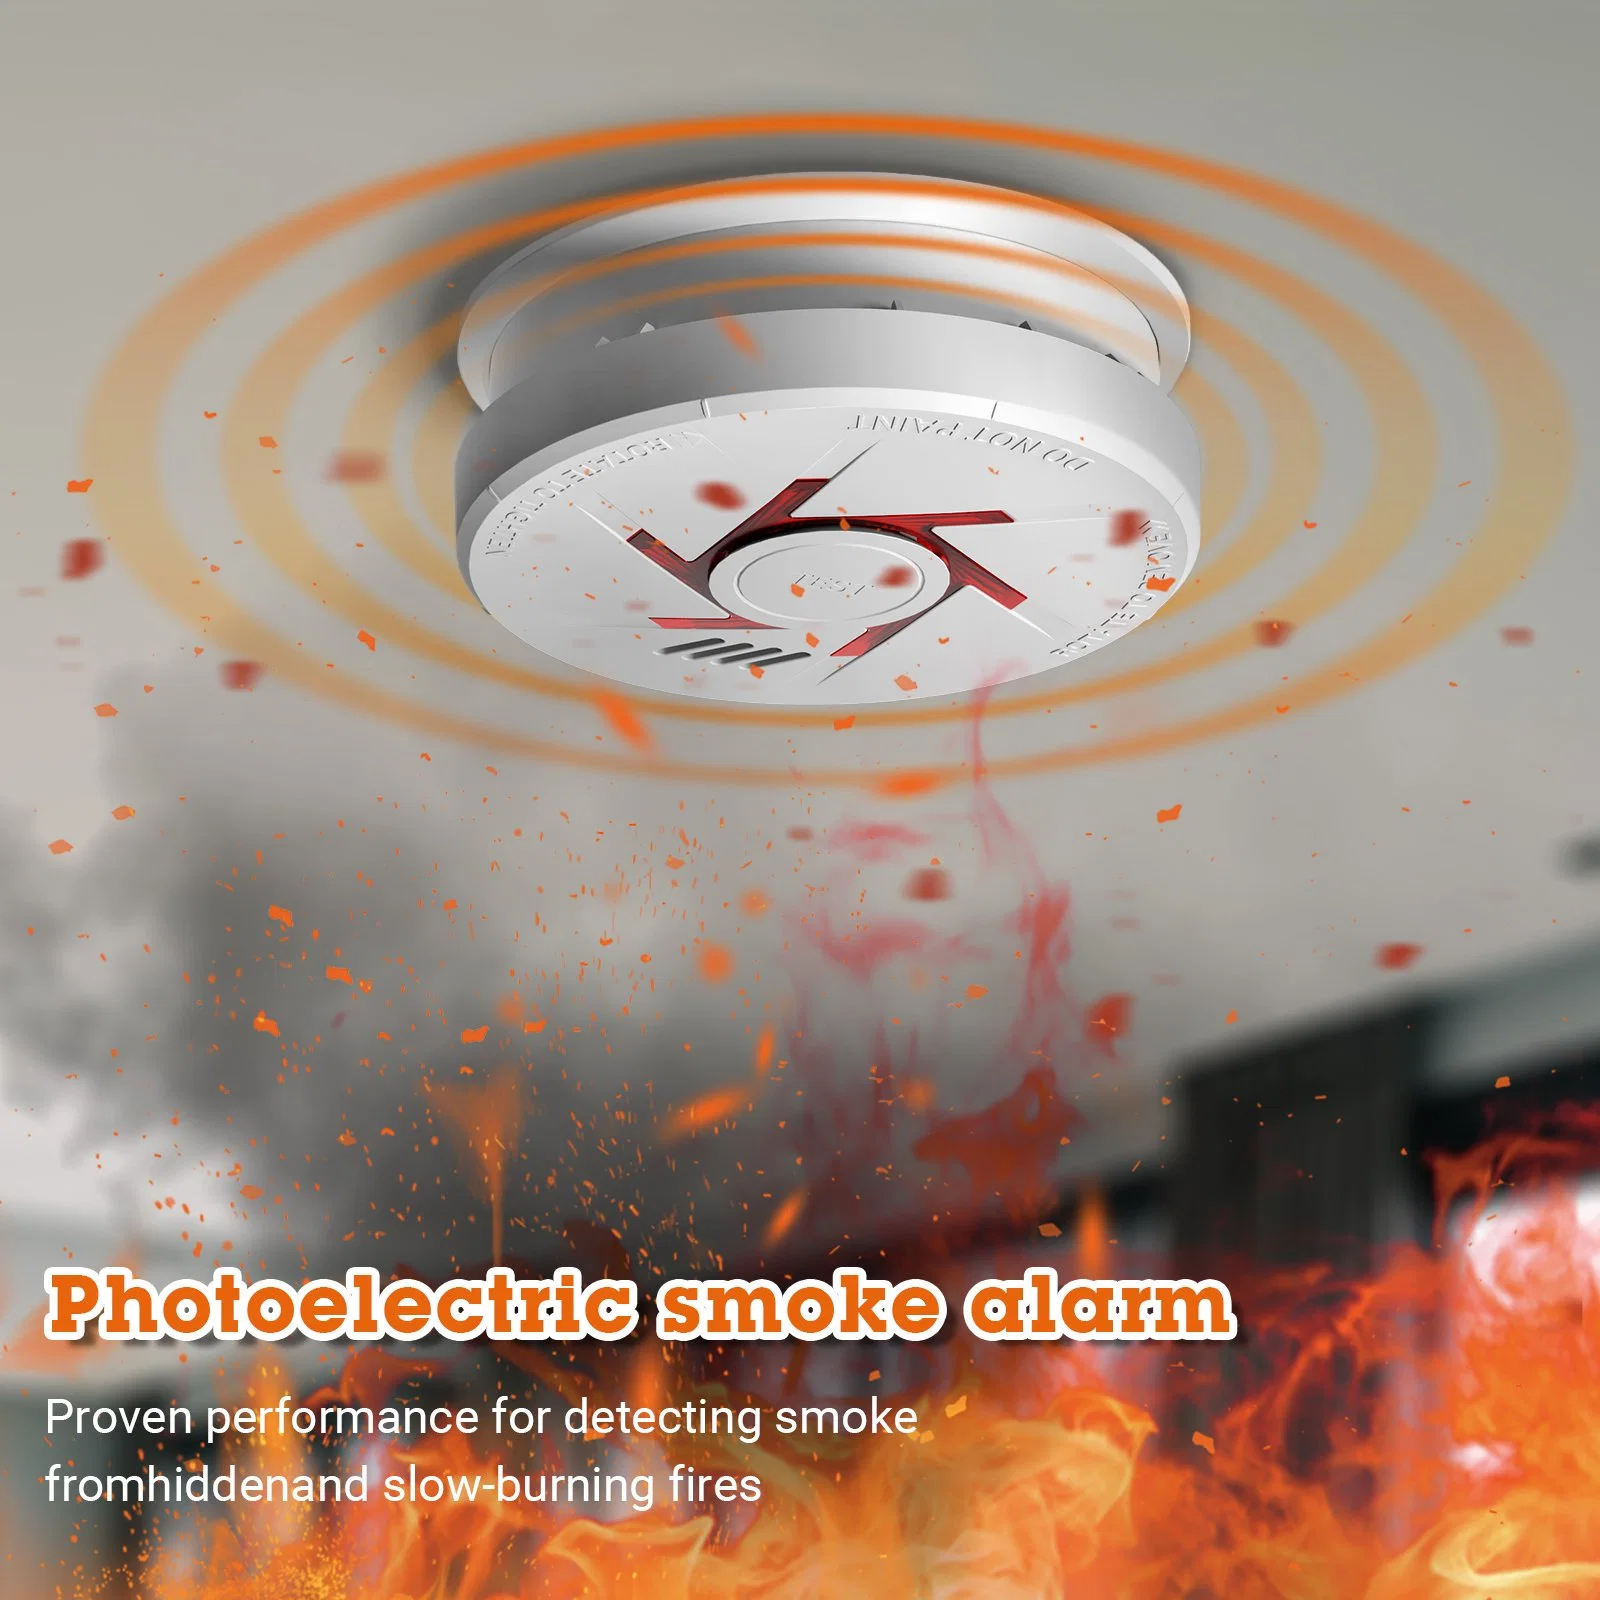 Fr14604 européenne CE alarme de détection de fumée photoélectrique Détecteur d'alarmes incendie autonome